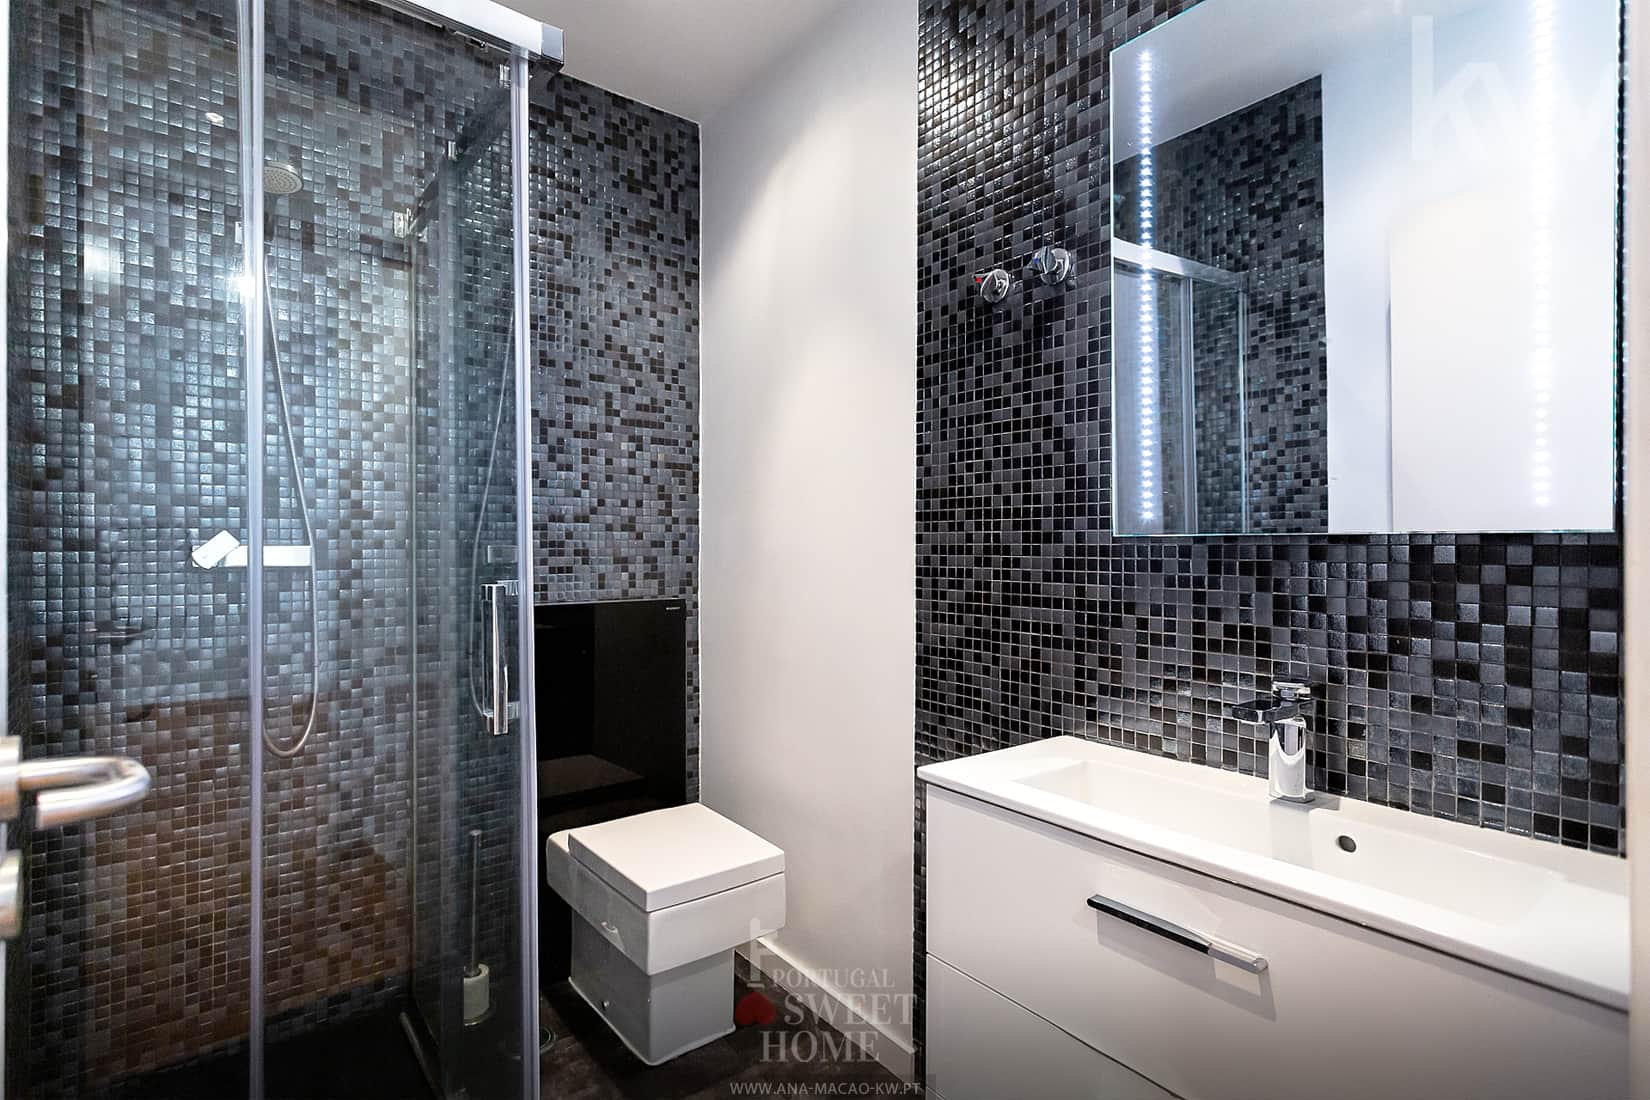 Salle de bain (2.9 m2) rénovée avec douche